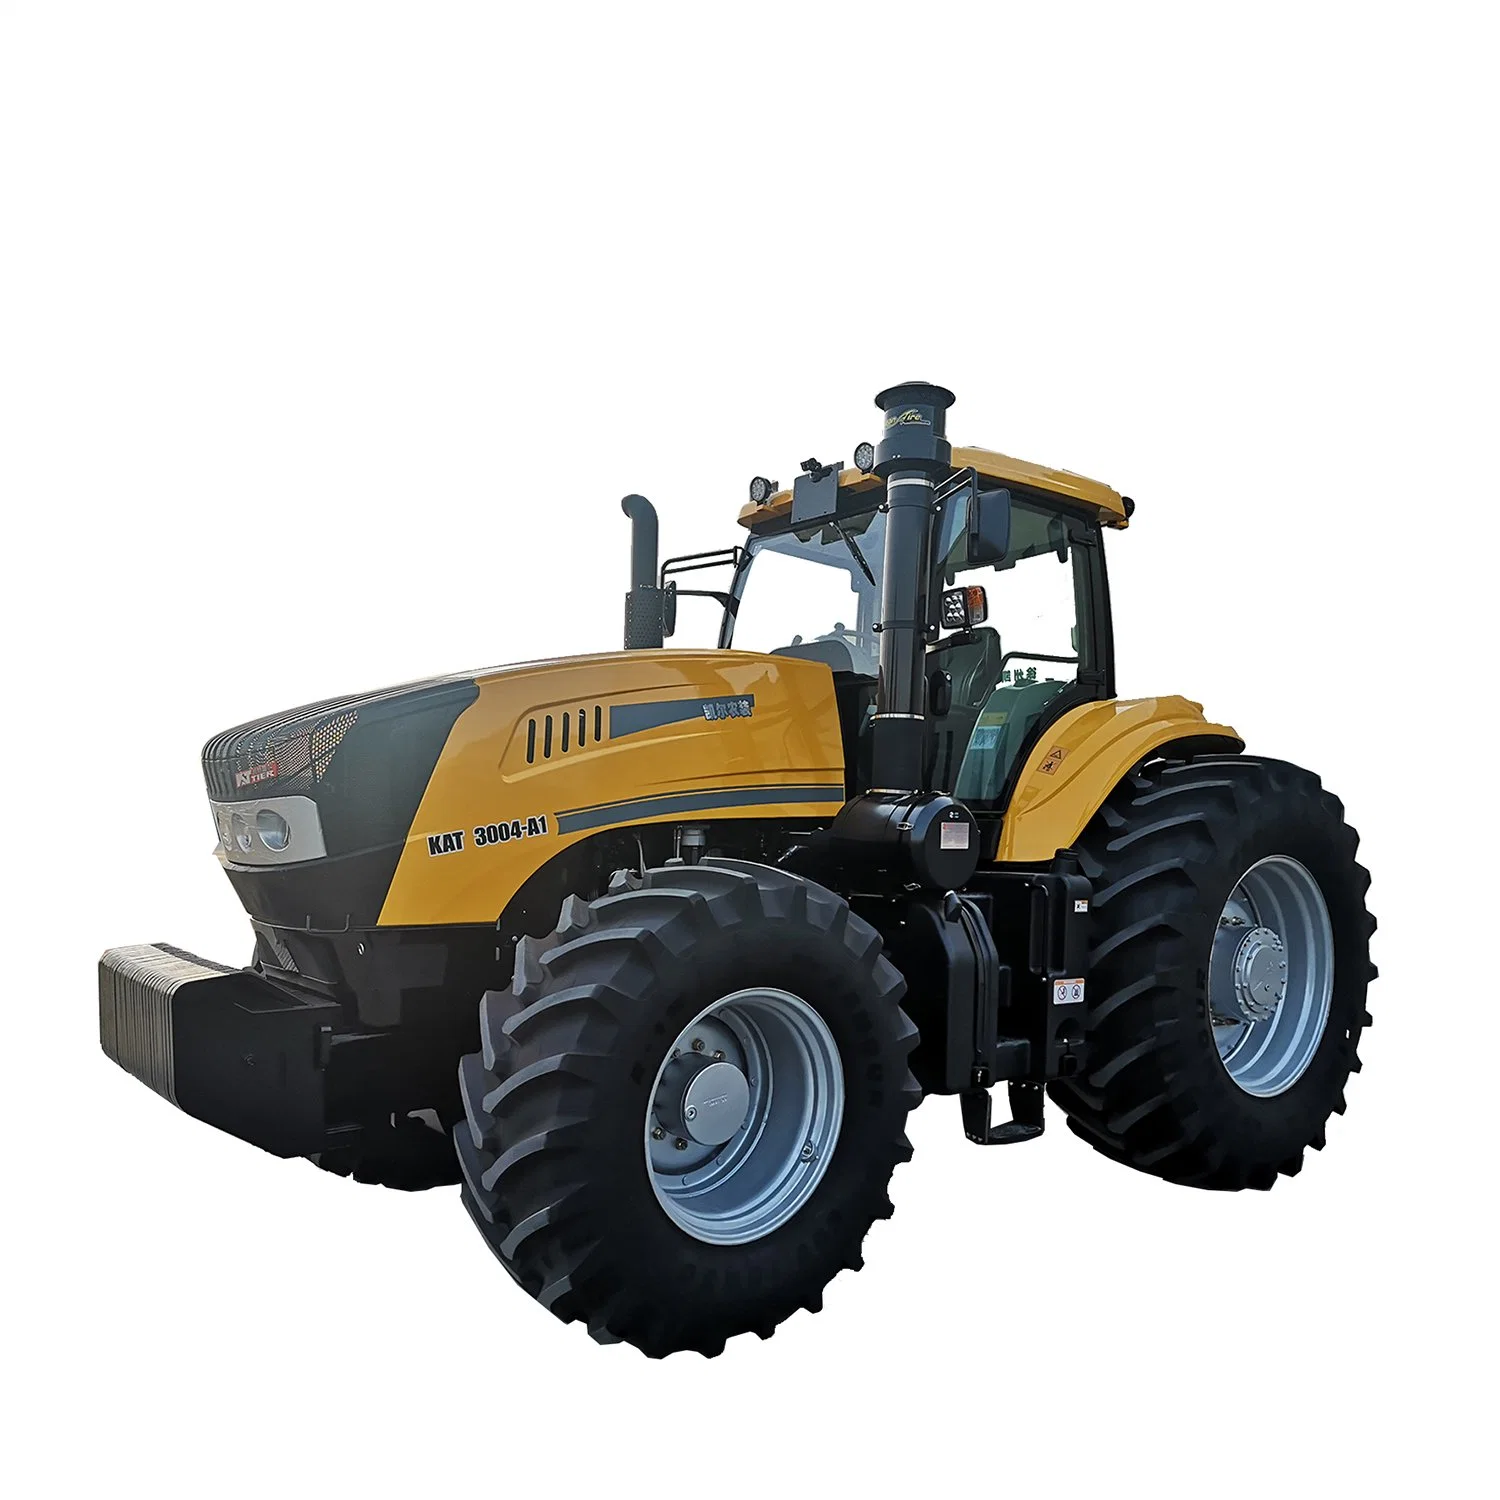 Kat3004-A1 Tractores chinos grandes de 300HP Maquinaria agrícola Tractores